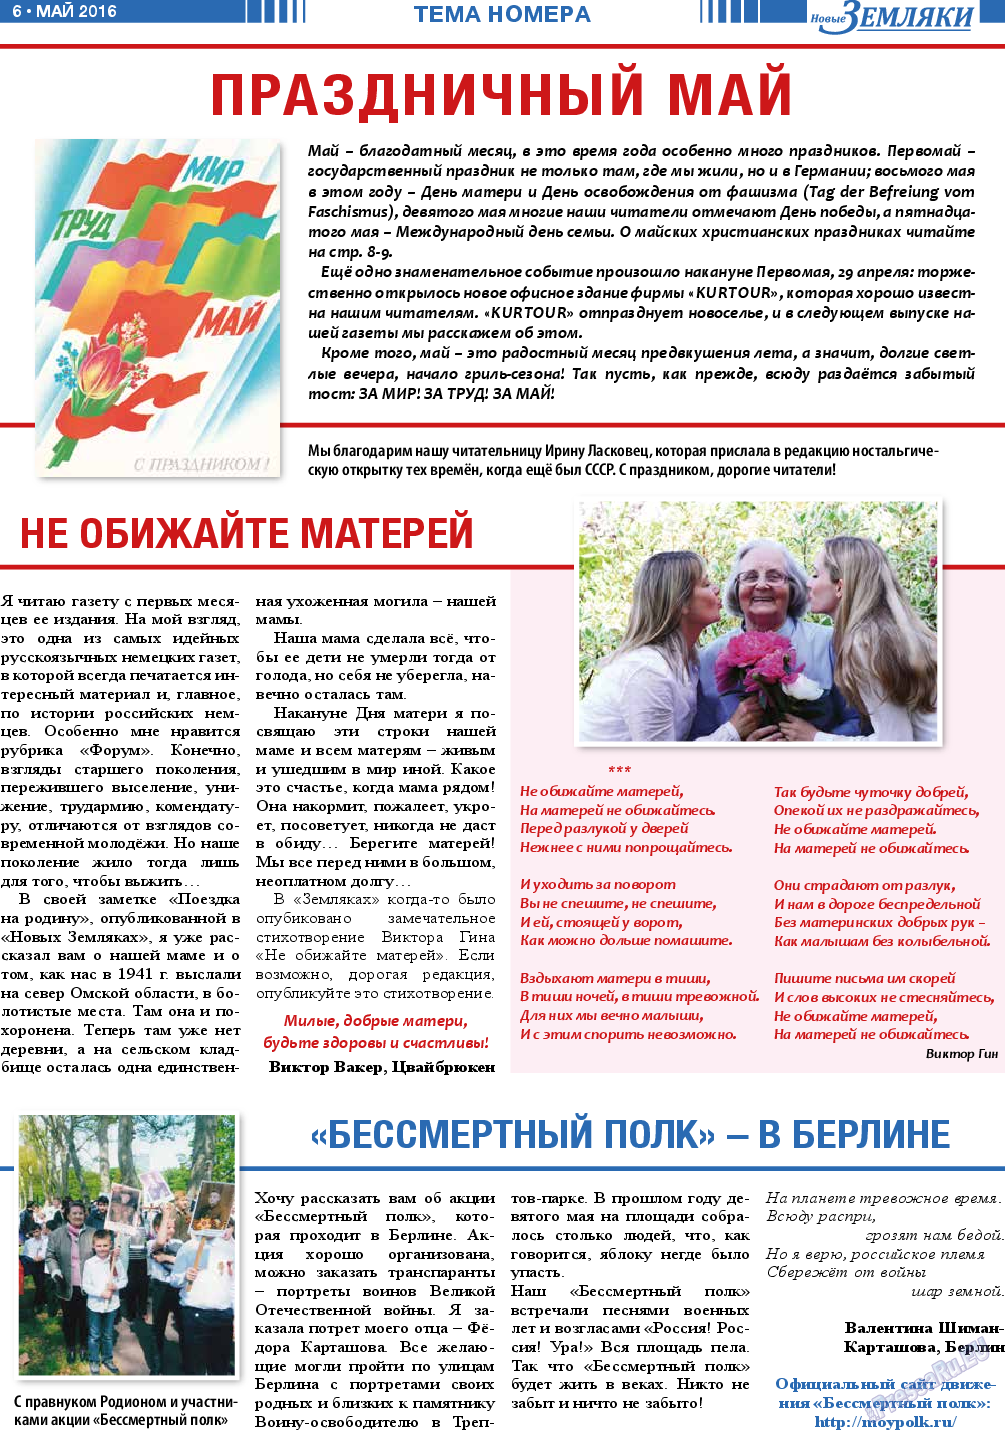 Новые Земляки (газета). 2016 год, номер 5, стр. 6